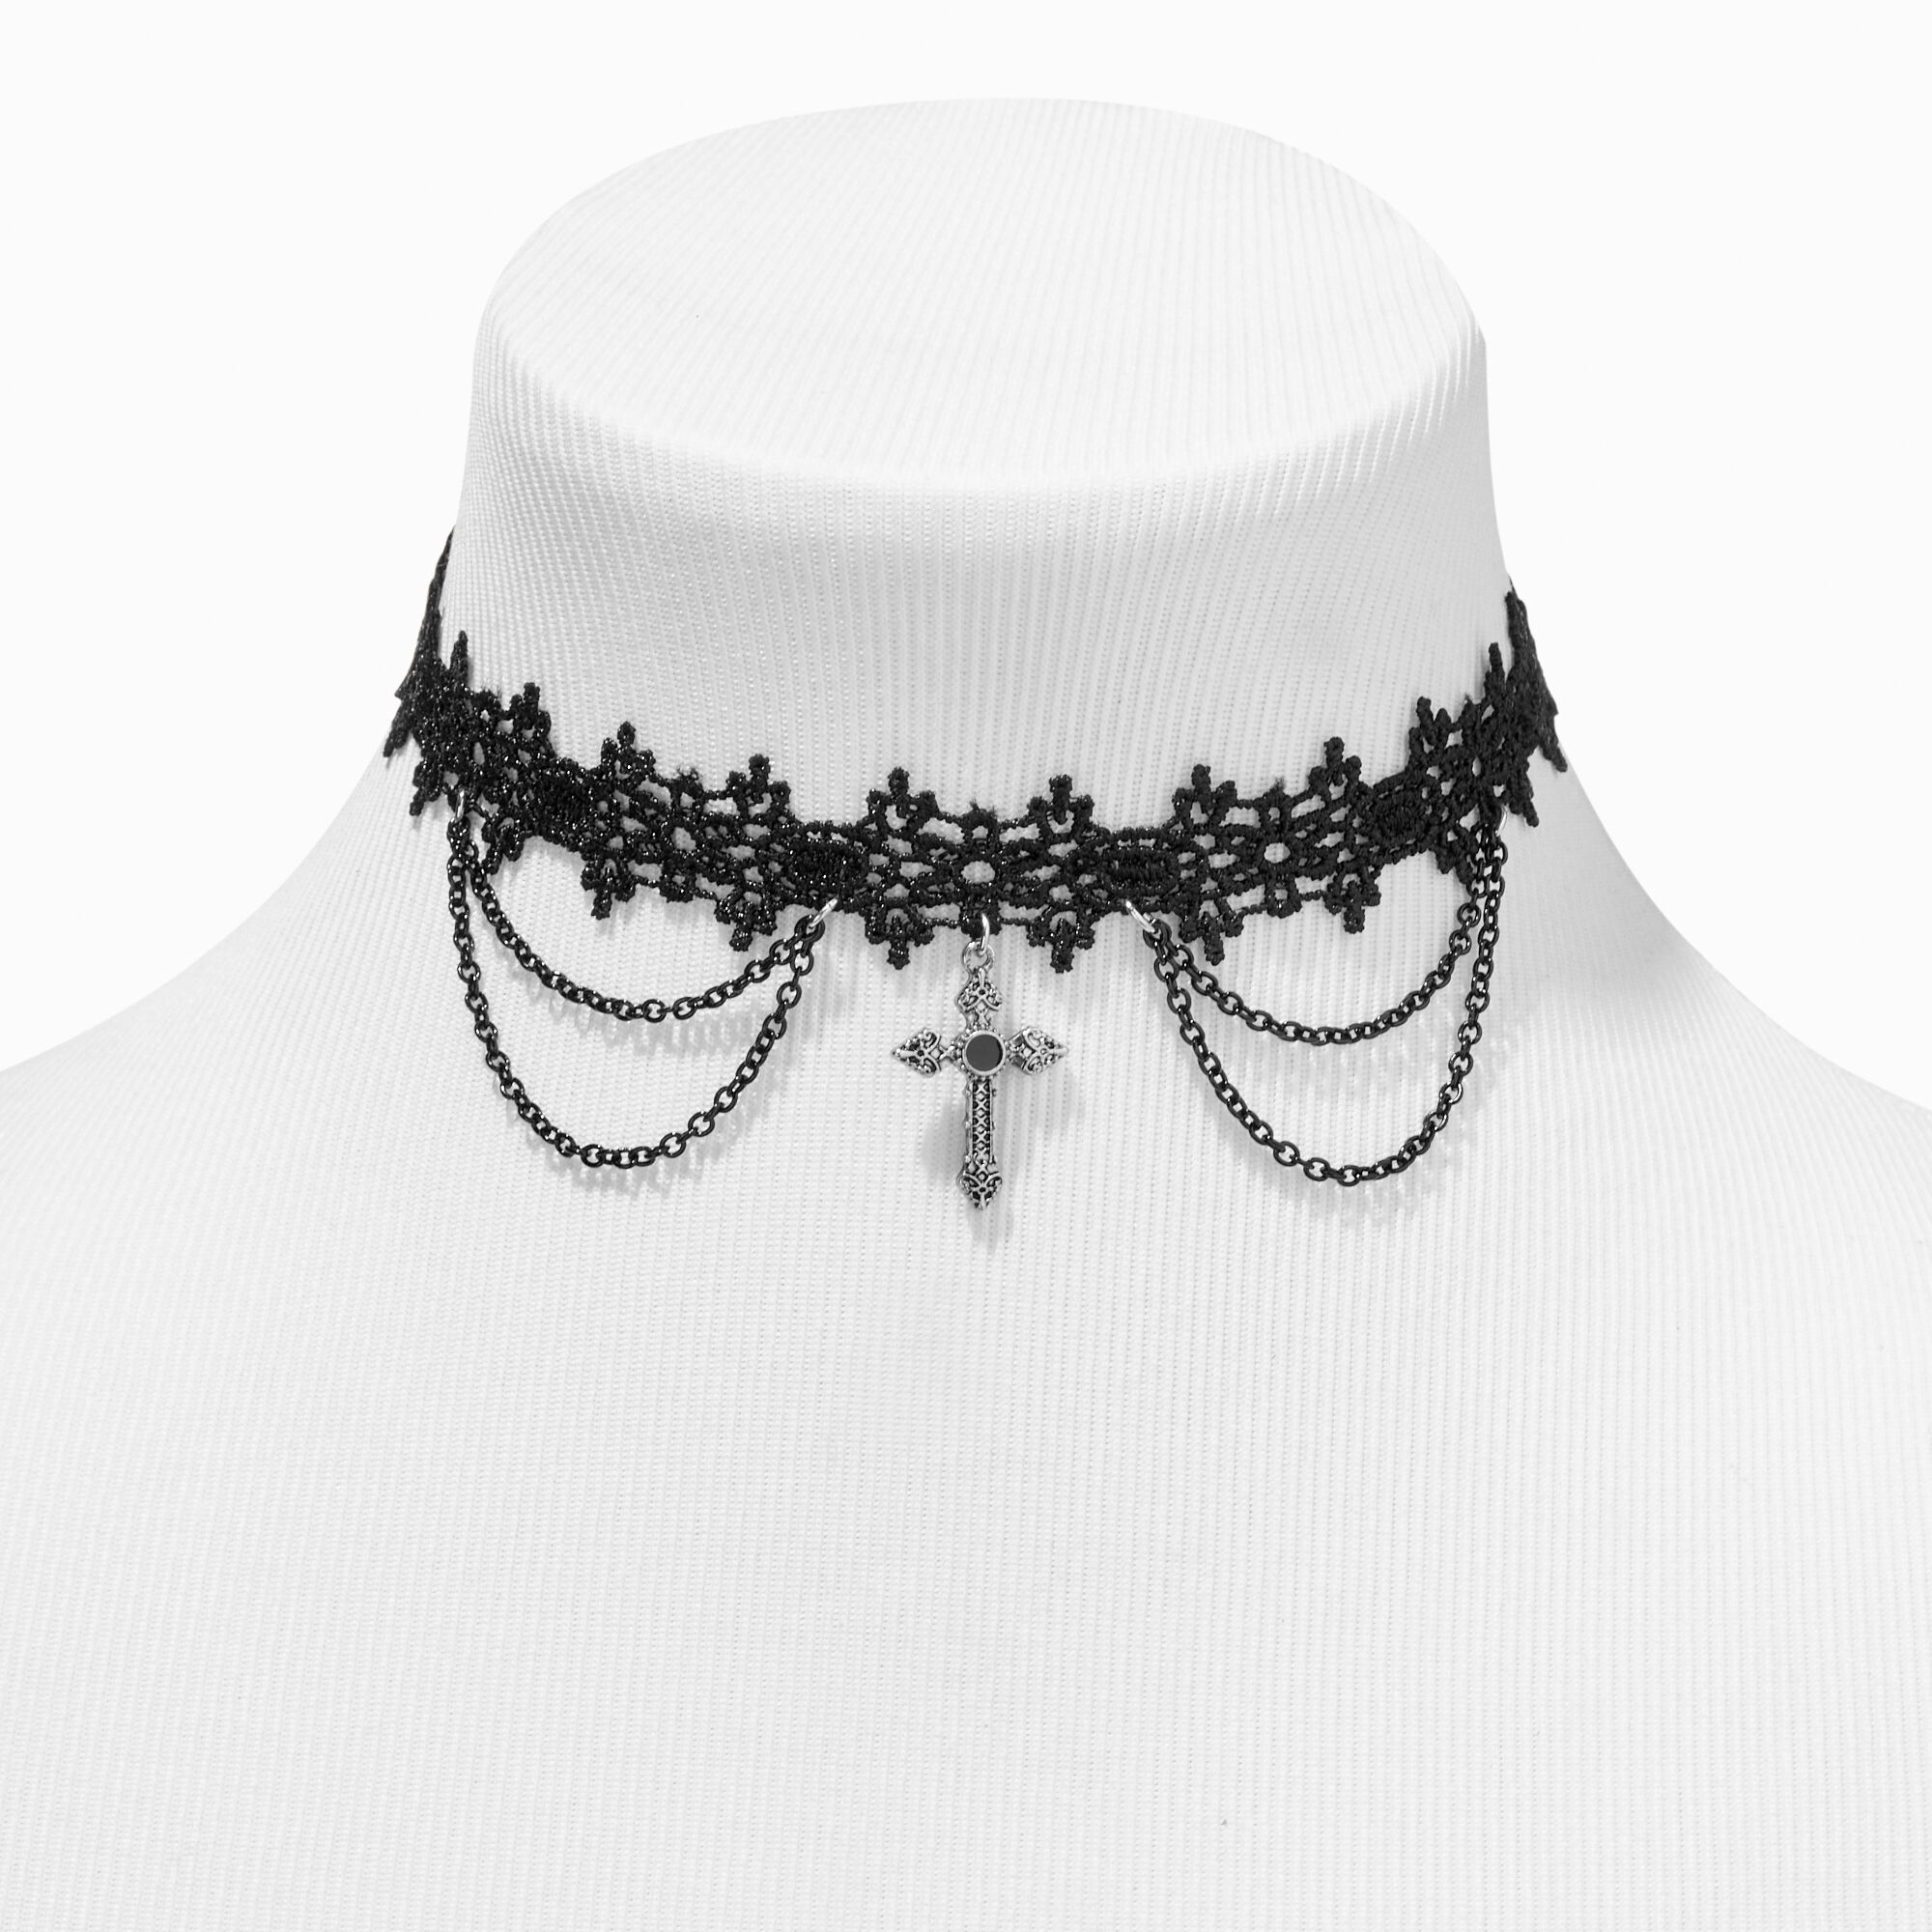 Vintage Victorian Gothic Steampunk Spider Web Choker Necklace Spider Choker  | eBay